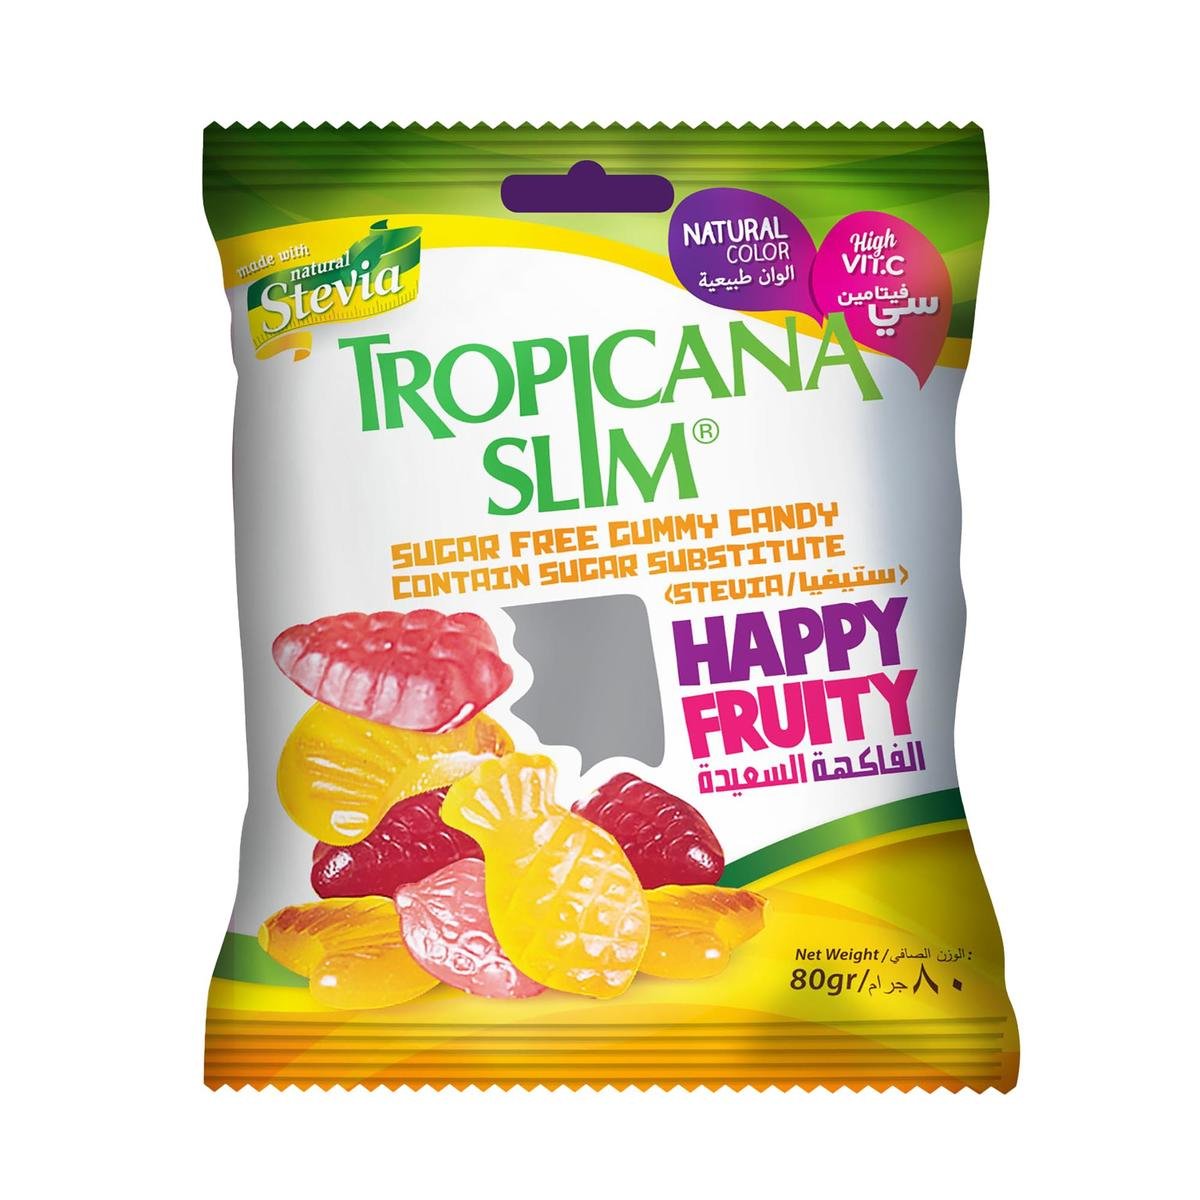 Tropicana Slim Happy Fruity Gummy Candy Sugar Free 80 g